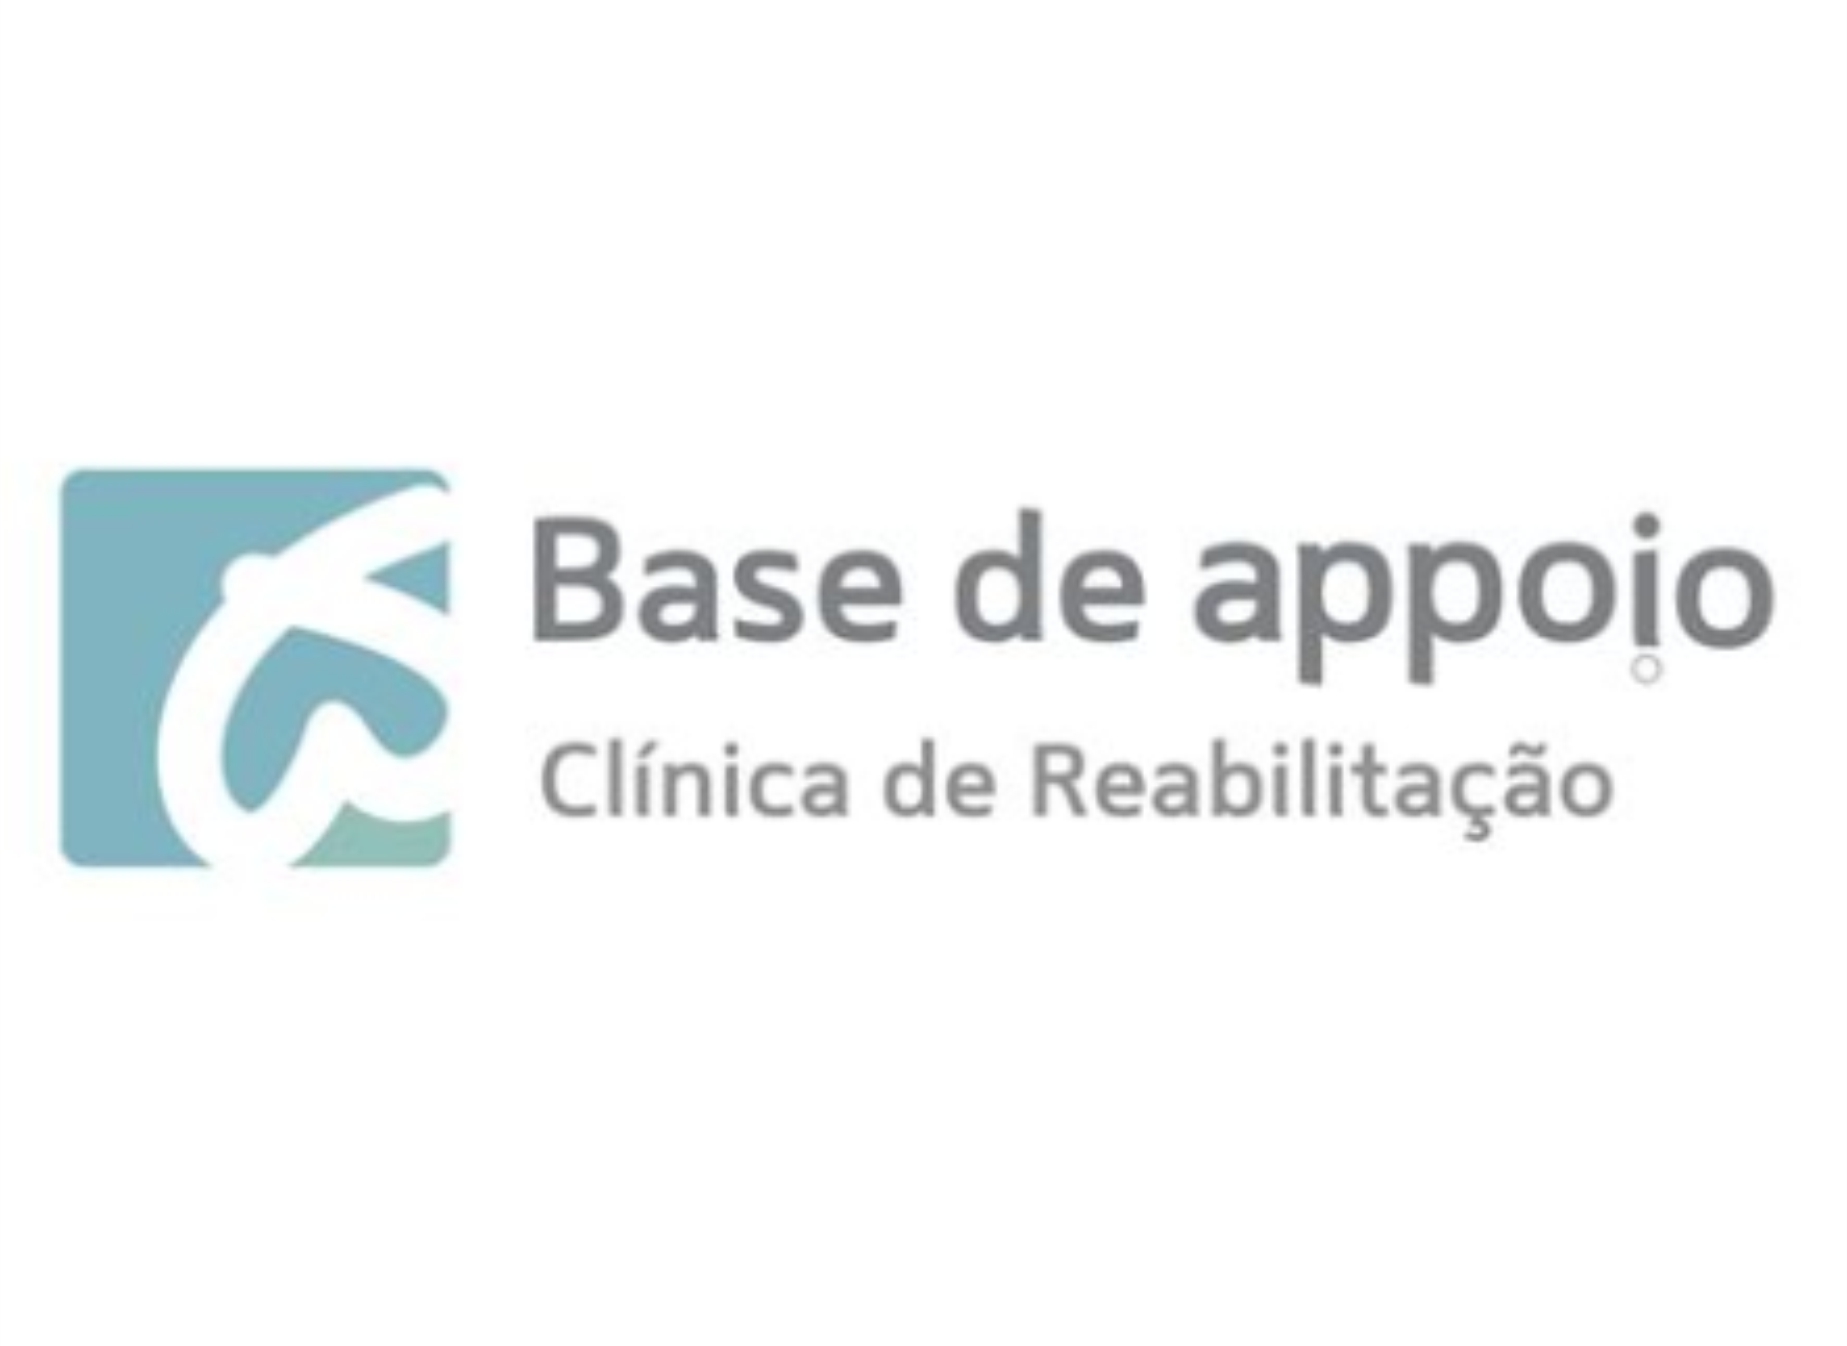 BASE DE APPOIO CLÍNICA DE REABILITAÇÃO | Equoterapia